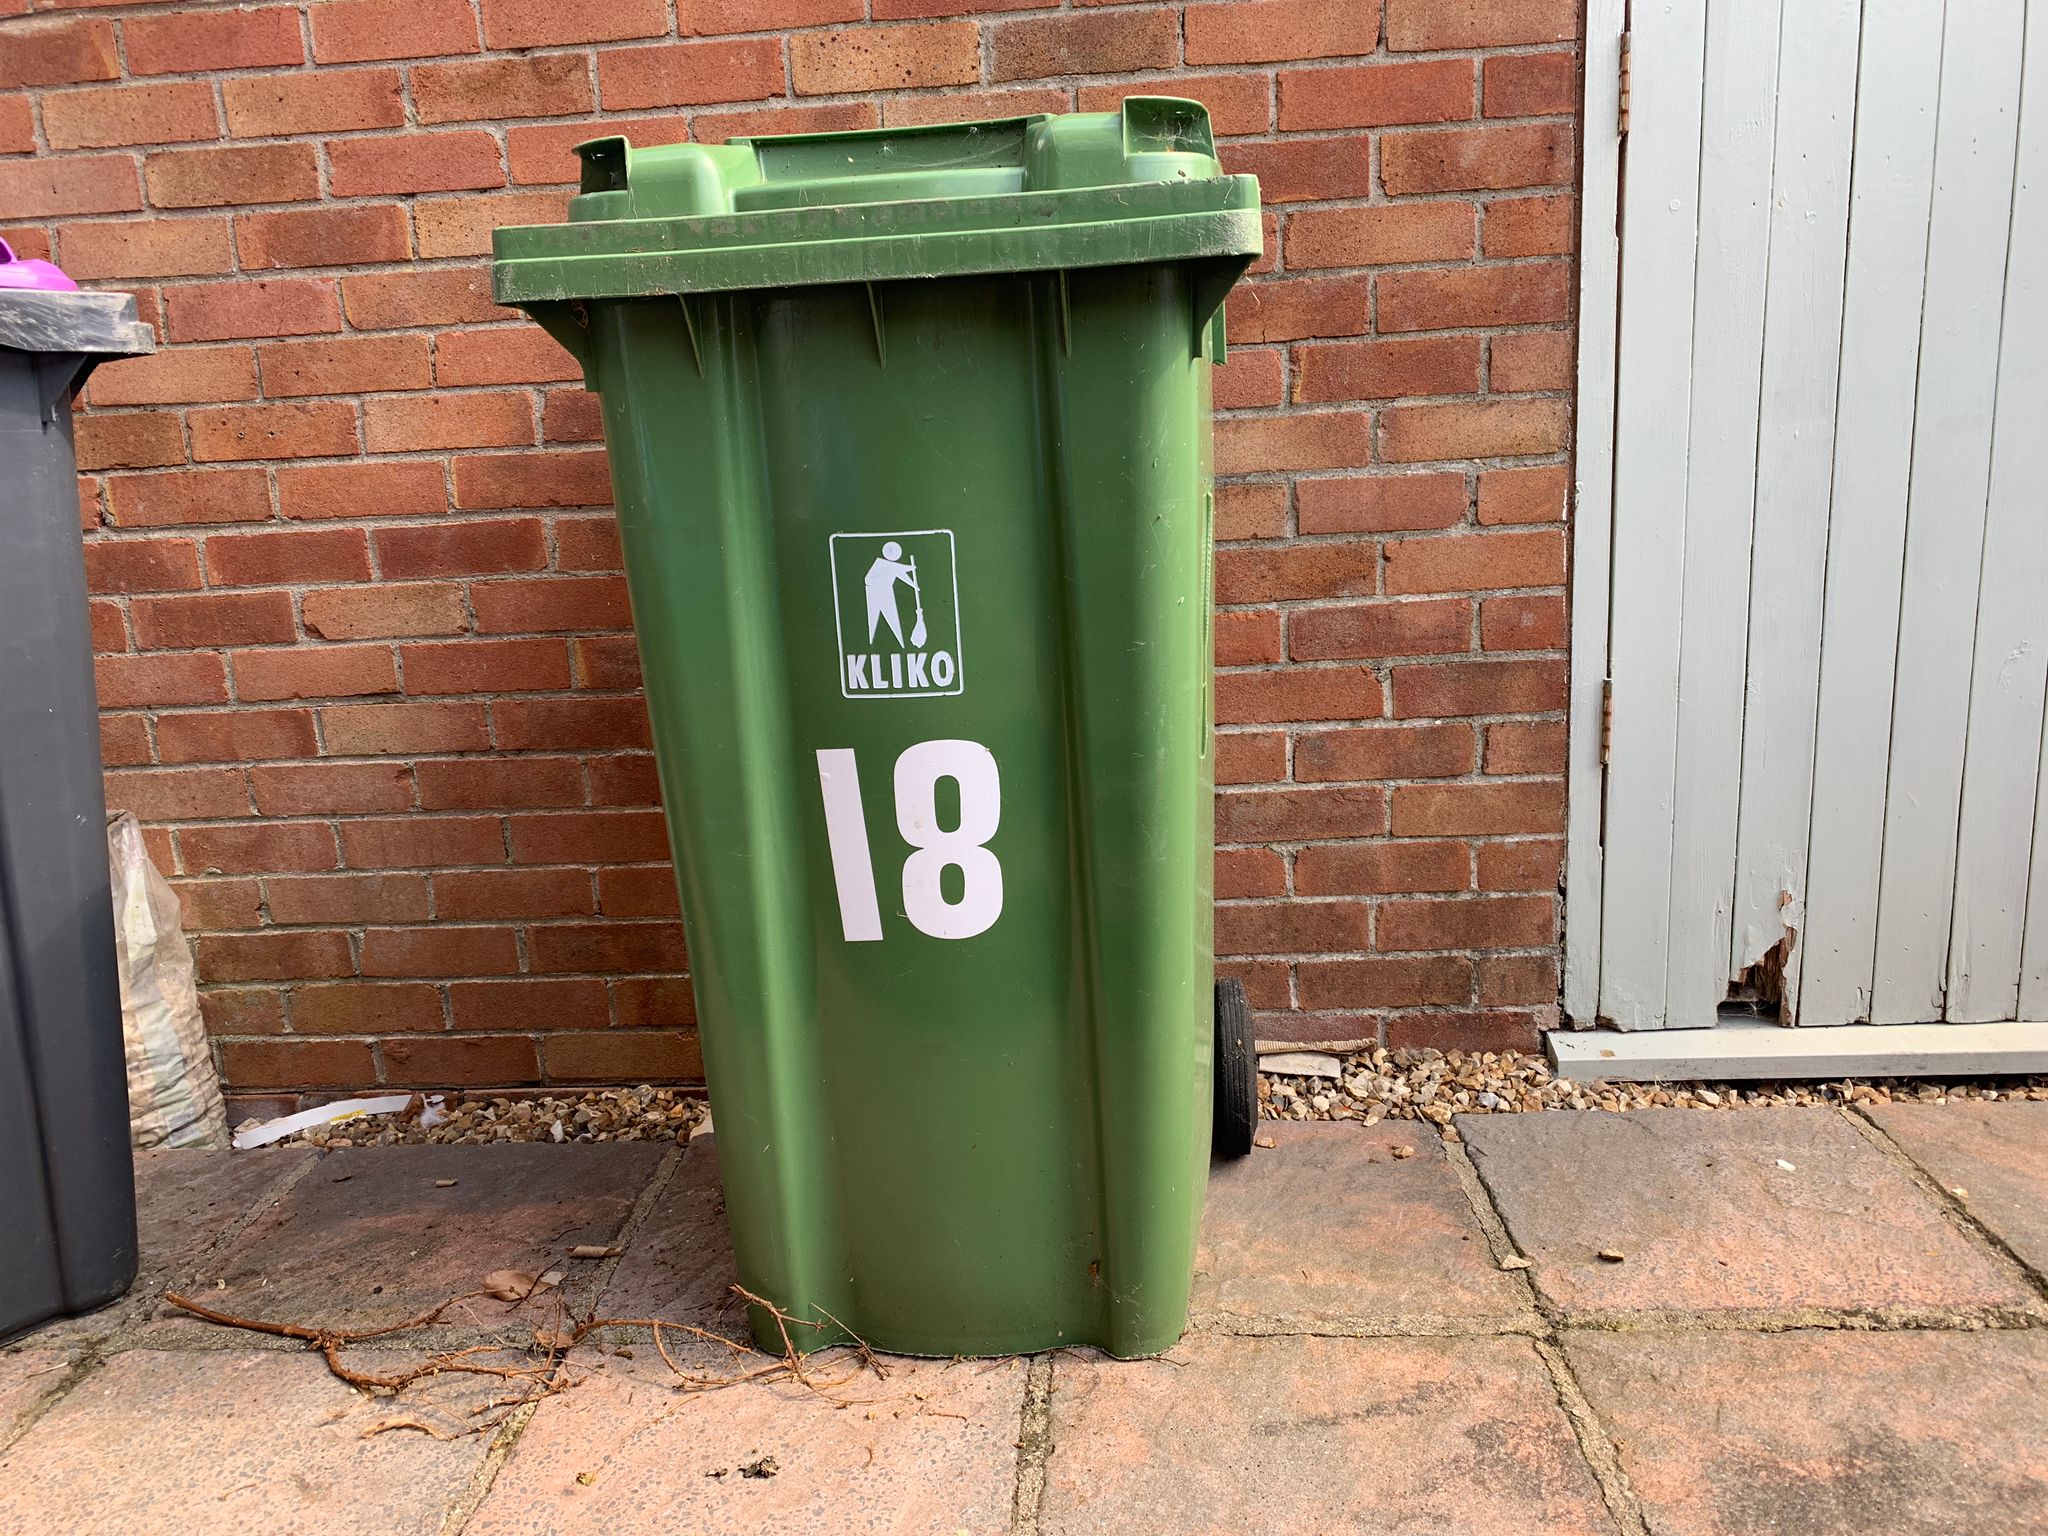 a green waste bin